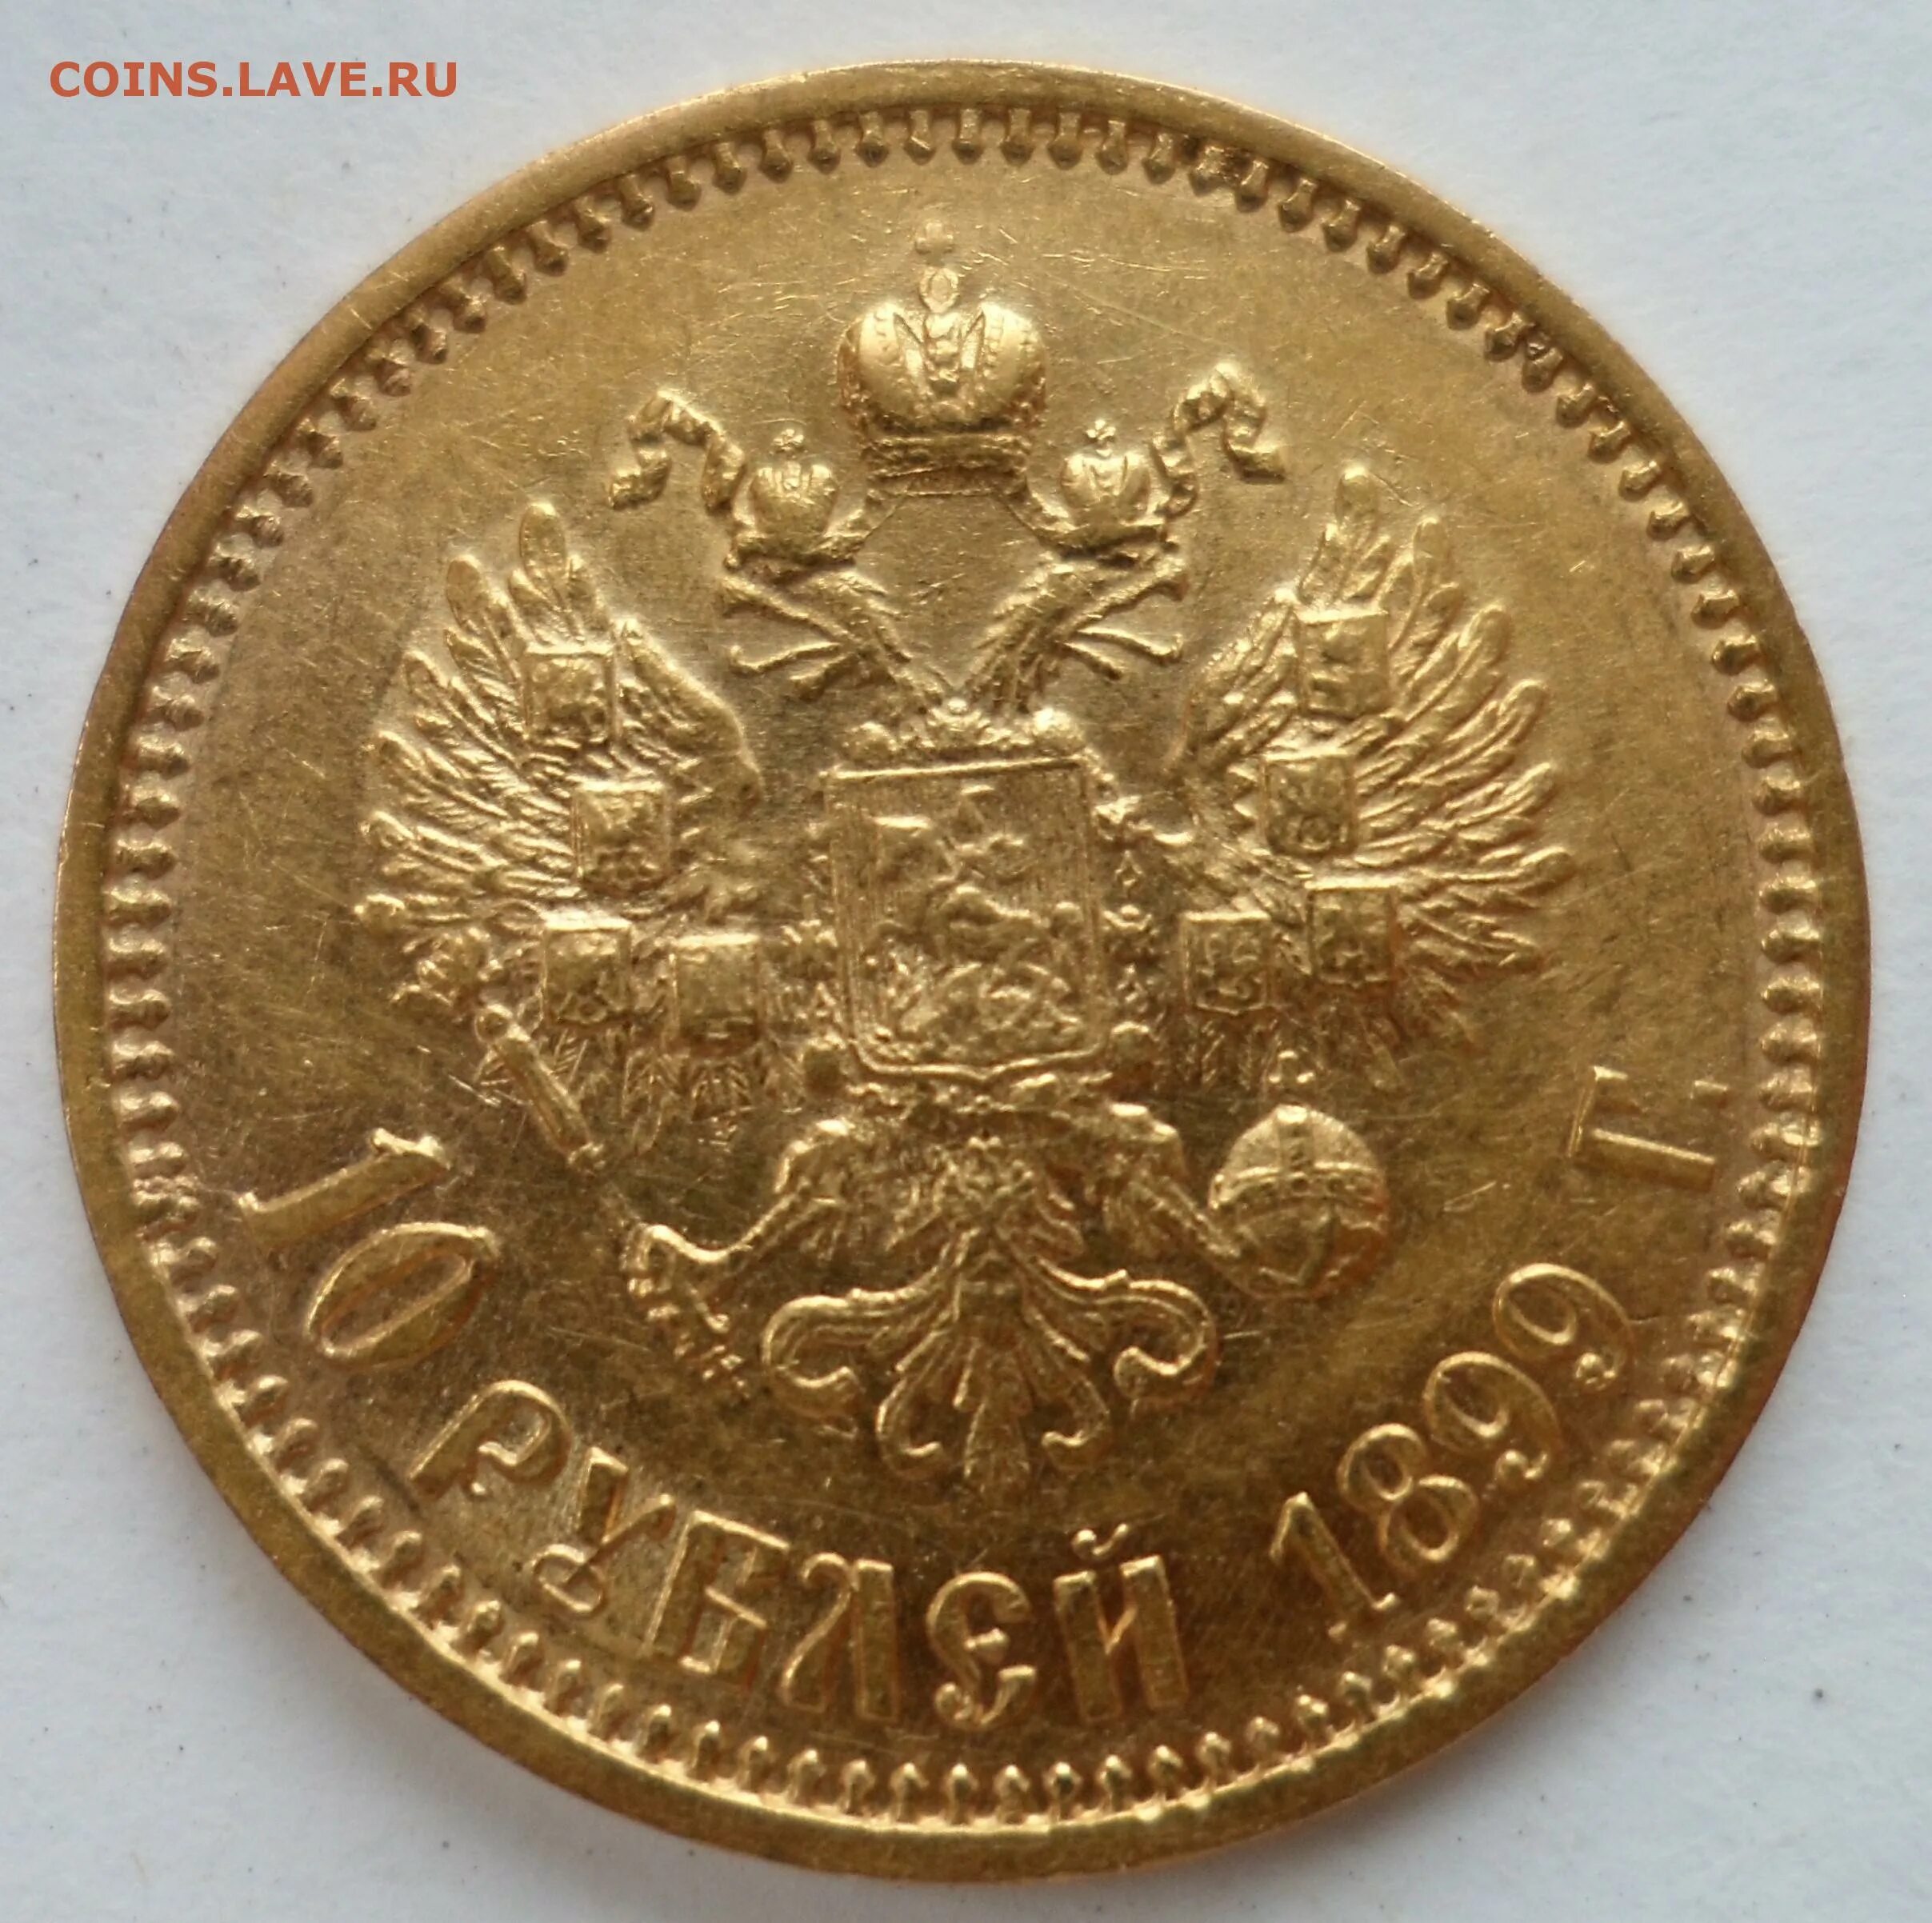 10 Рублей 1887 года золото. 5 Рублей 1901 года золото. 10 Рублей 1900 года.